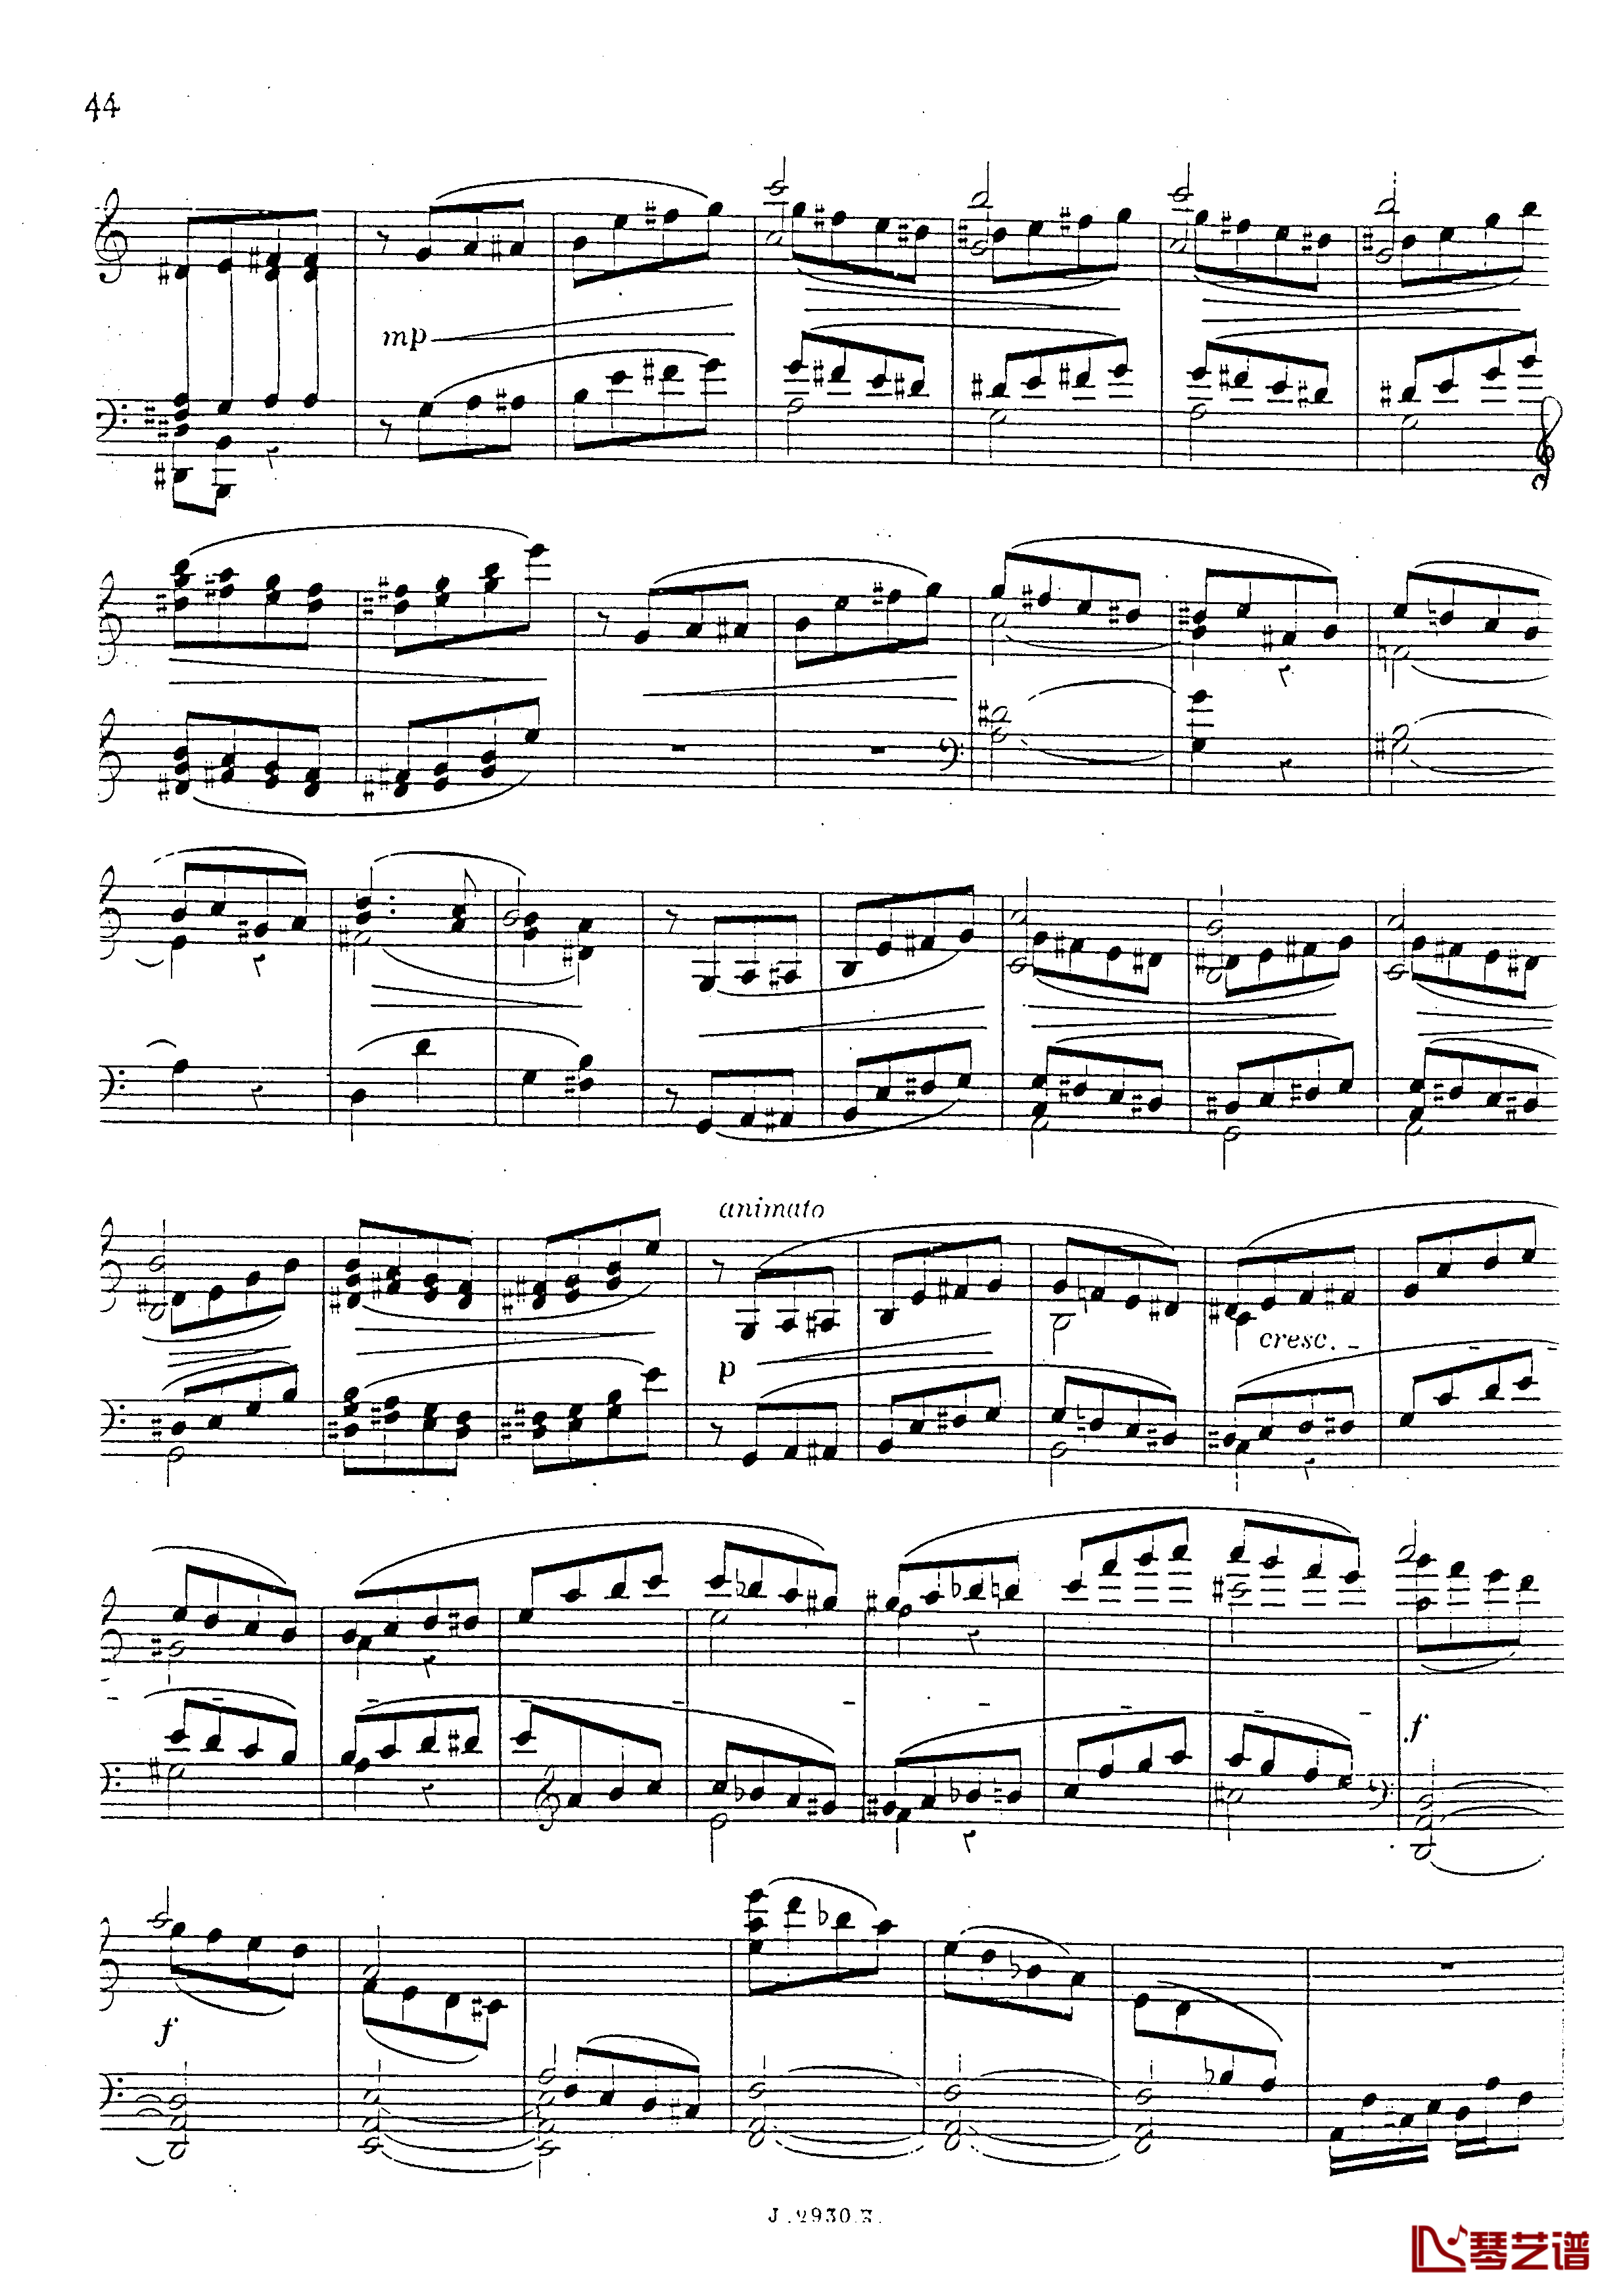 a小调第四钢琴奏鸣曲钢琴谱-安东 鲁宾斯坦- Op.10045